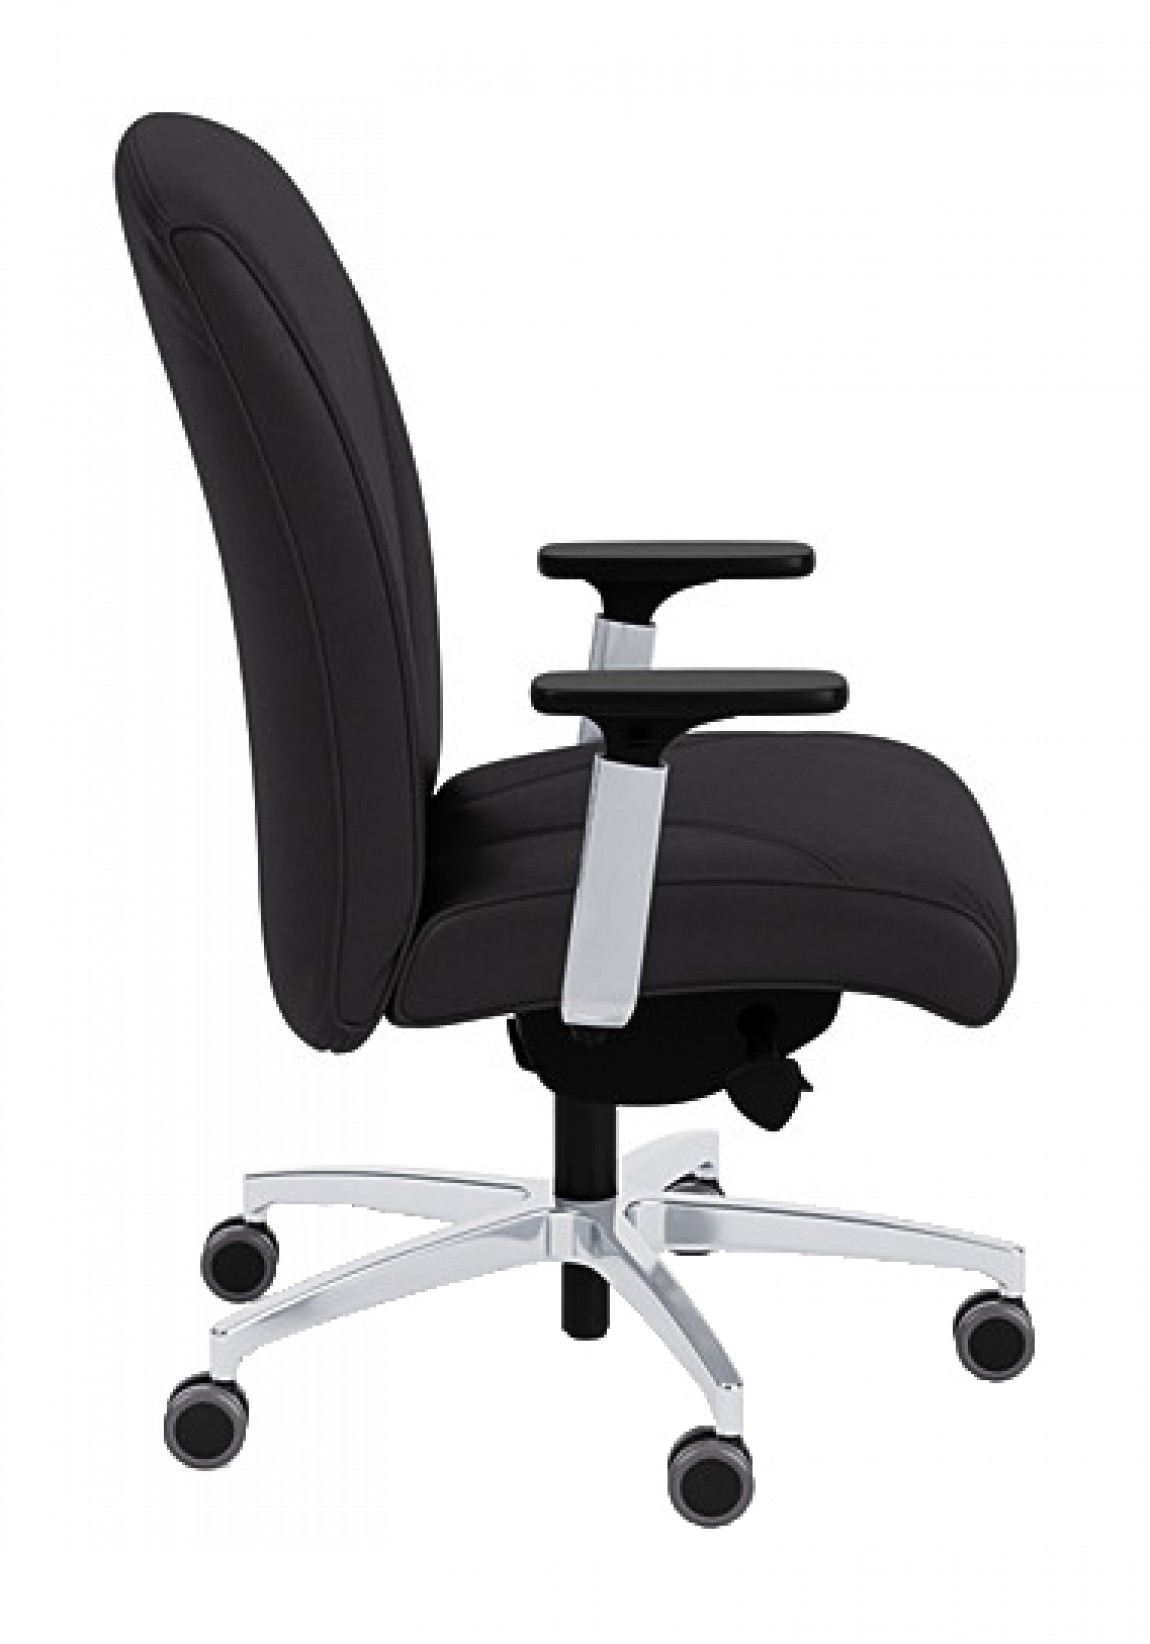 https://madisonliquidators.com/images/p/1150/29660-mid-back-ergonomic-chair-2.jpg